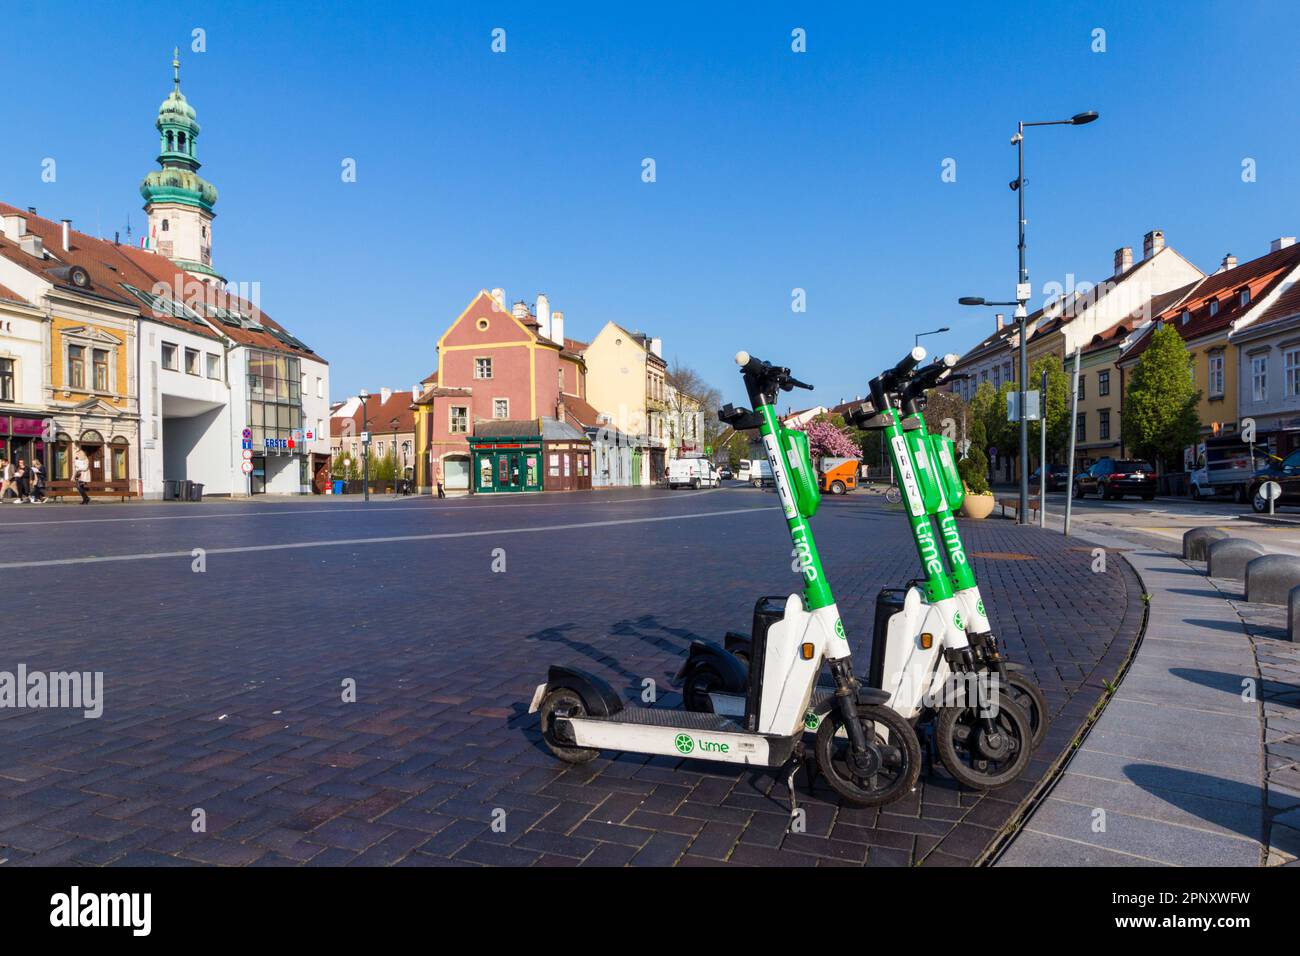 Erster Tag mit Lime E-Scootern zum Verleih, Varkerulet, Sopron, Ungarn Stockfoto